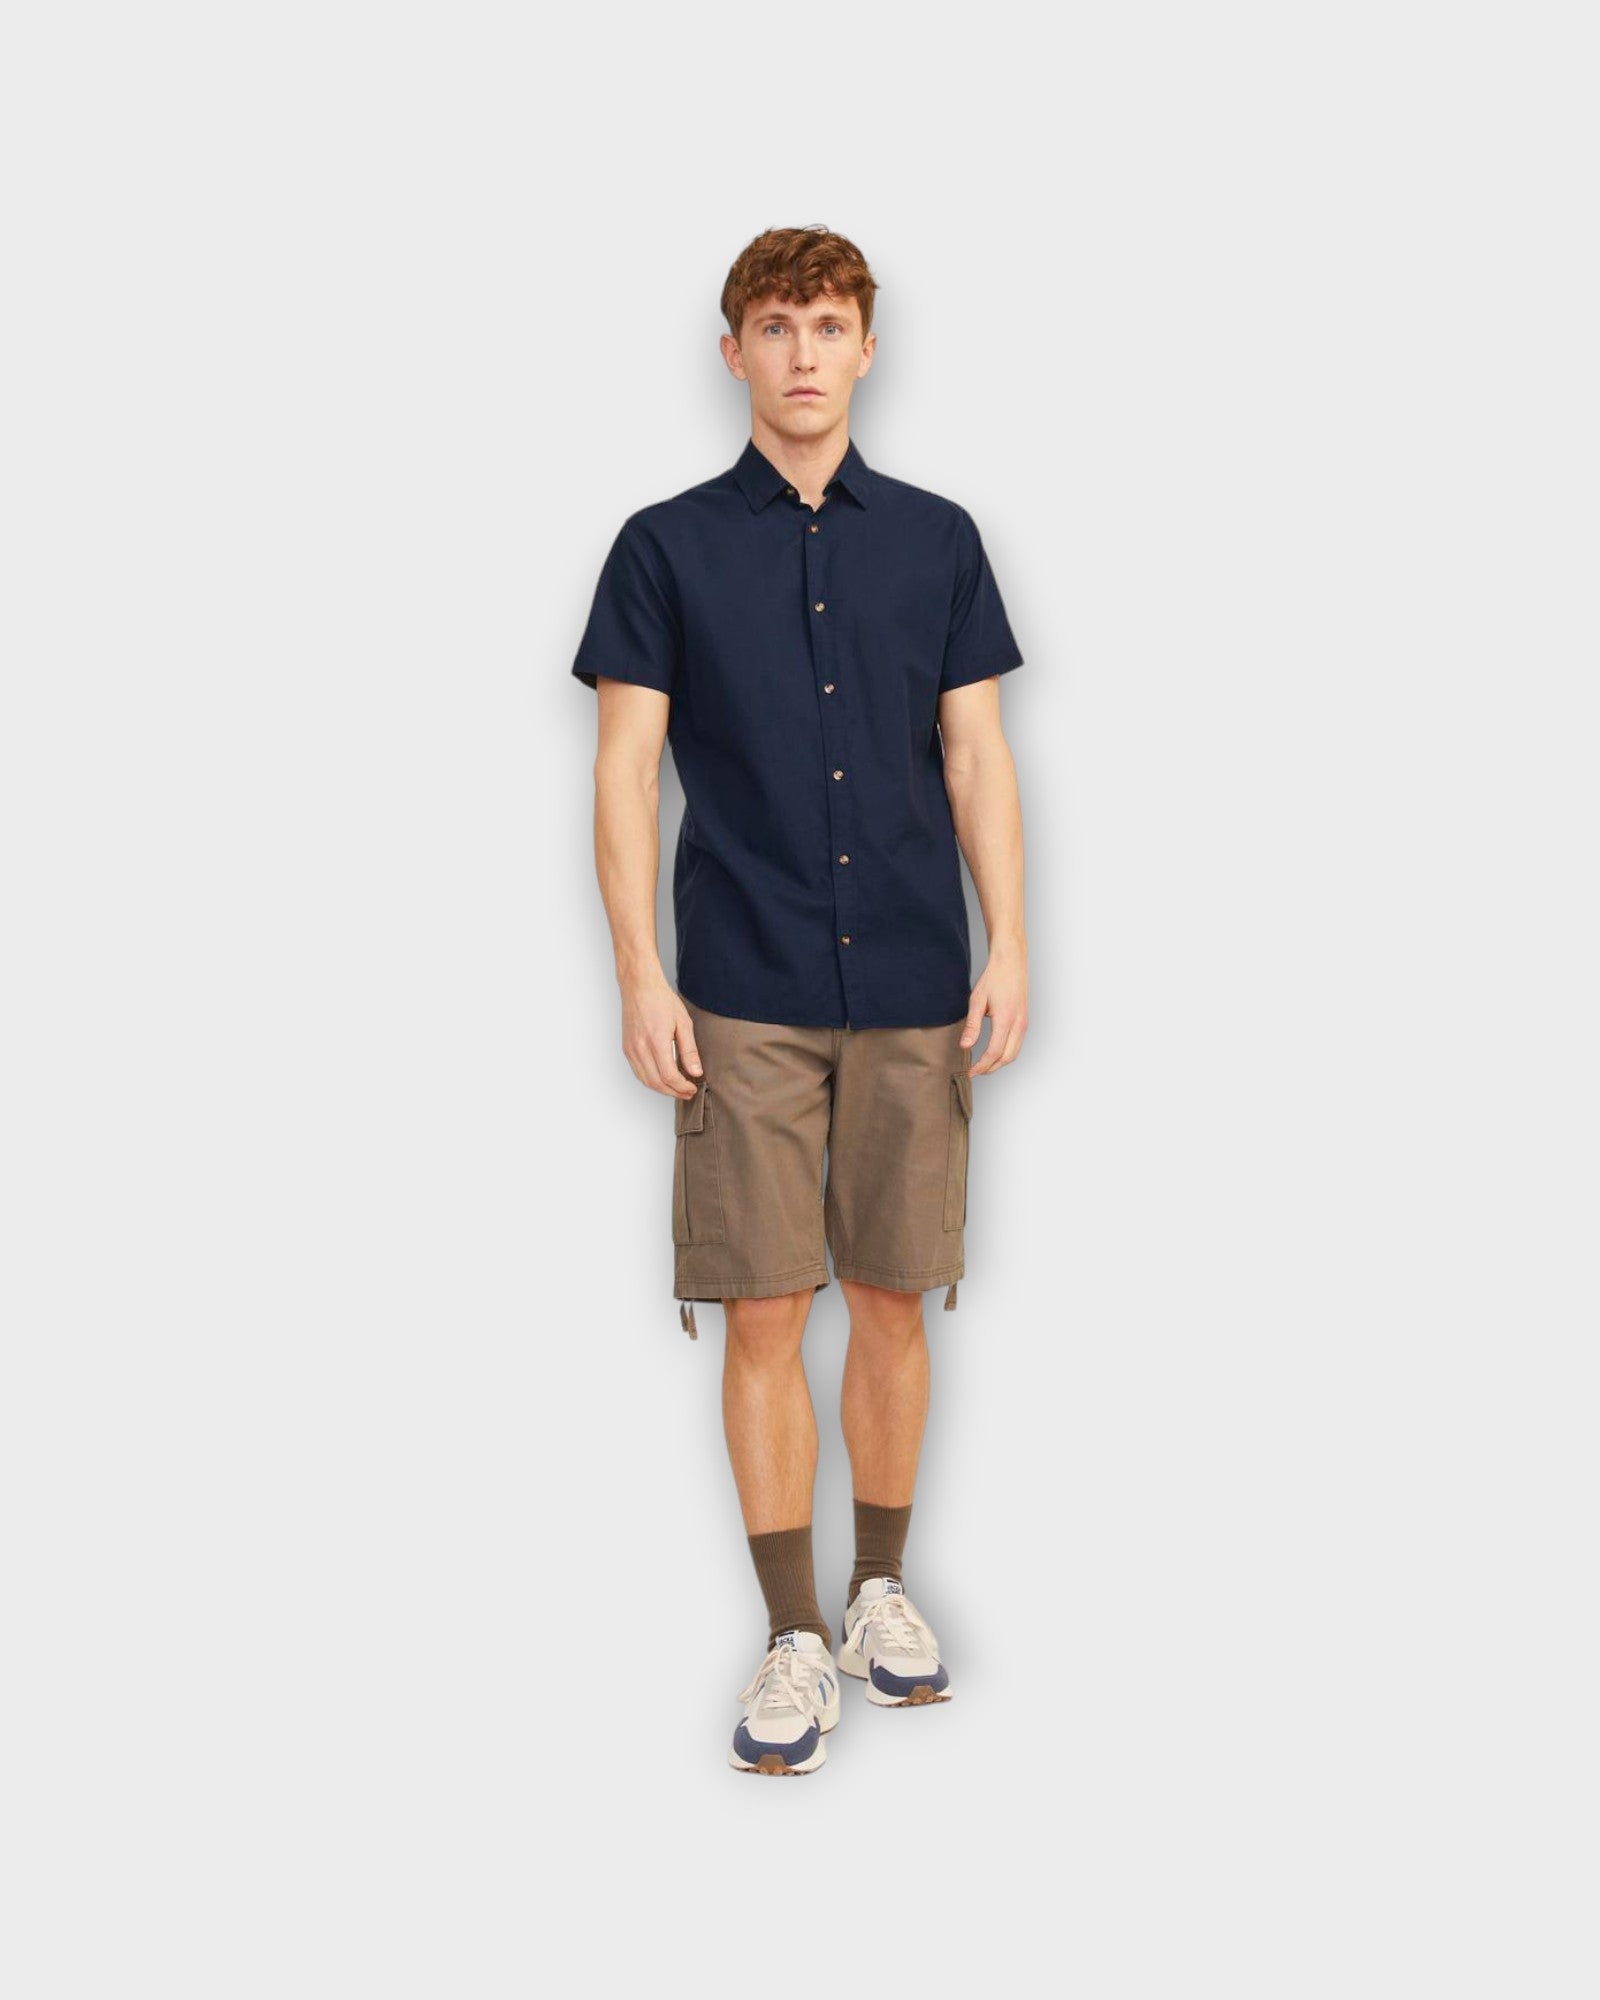 Summer Linen Shirt Navy Blazer fra Jack and Jones. Kortærmet mørkeblå hørskjorte til mænd. Her set på model forfra.